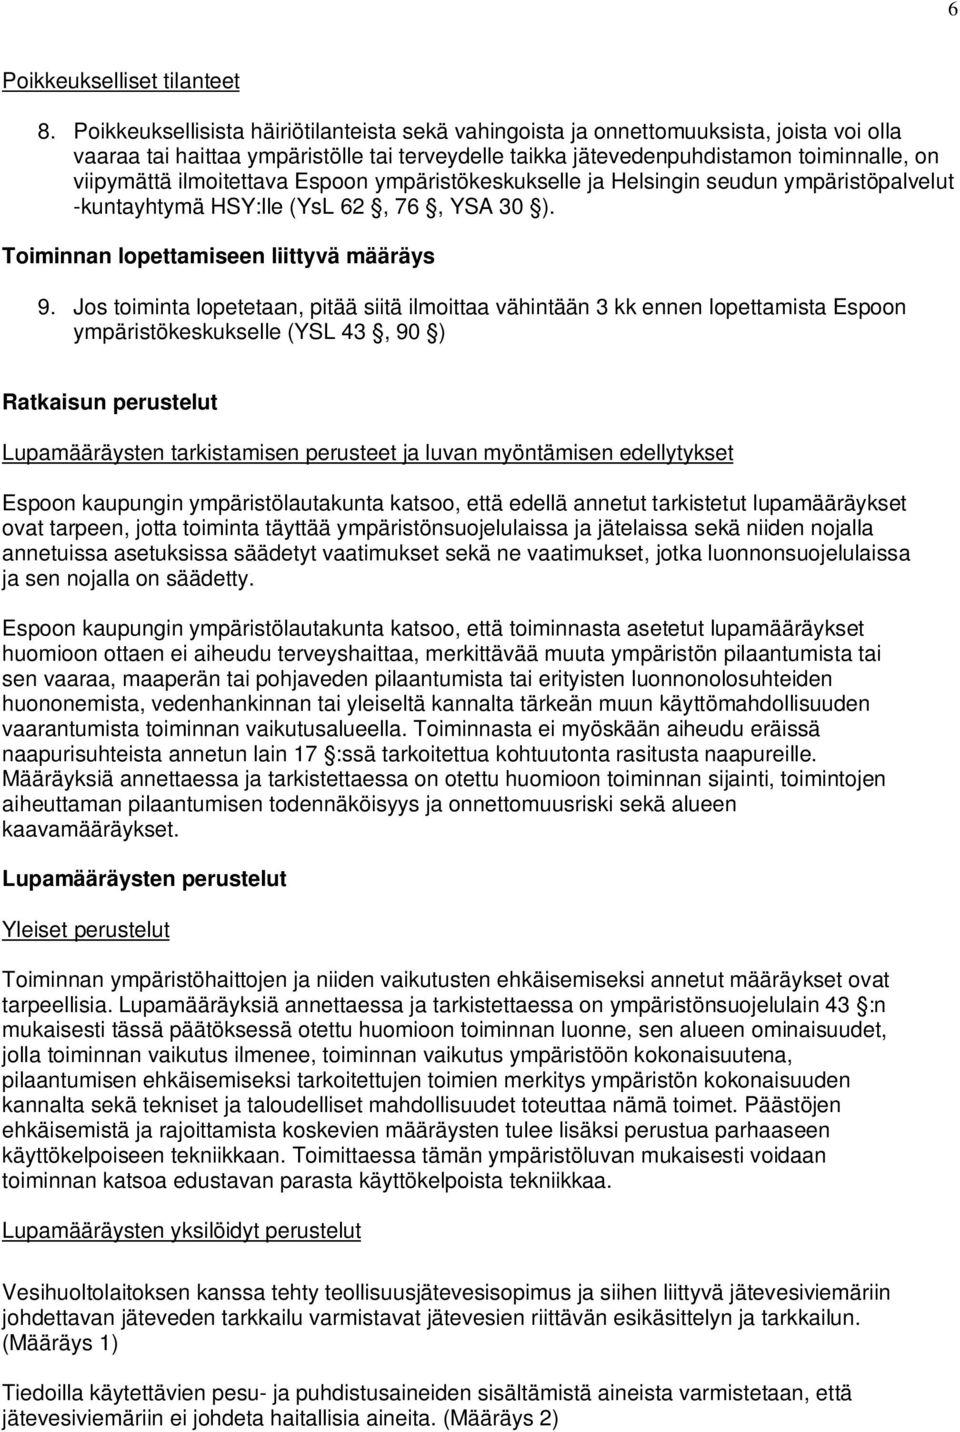 ilmoitettava Espoon ympäristökeskukselle ja Helsingin seudun ympäristöpalvelut -kuntayhtymä HSY:lle (YsL 62, 76, YSA 30 ). Toiminnan lopettamiseen liittyvä määräys 9.